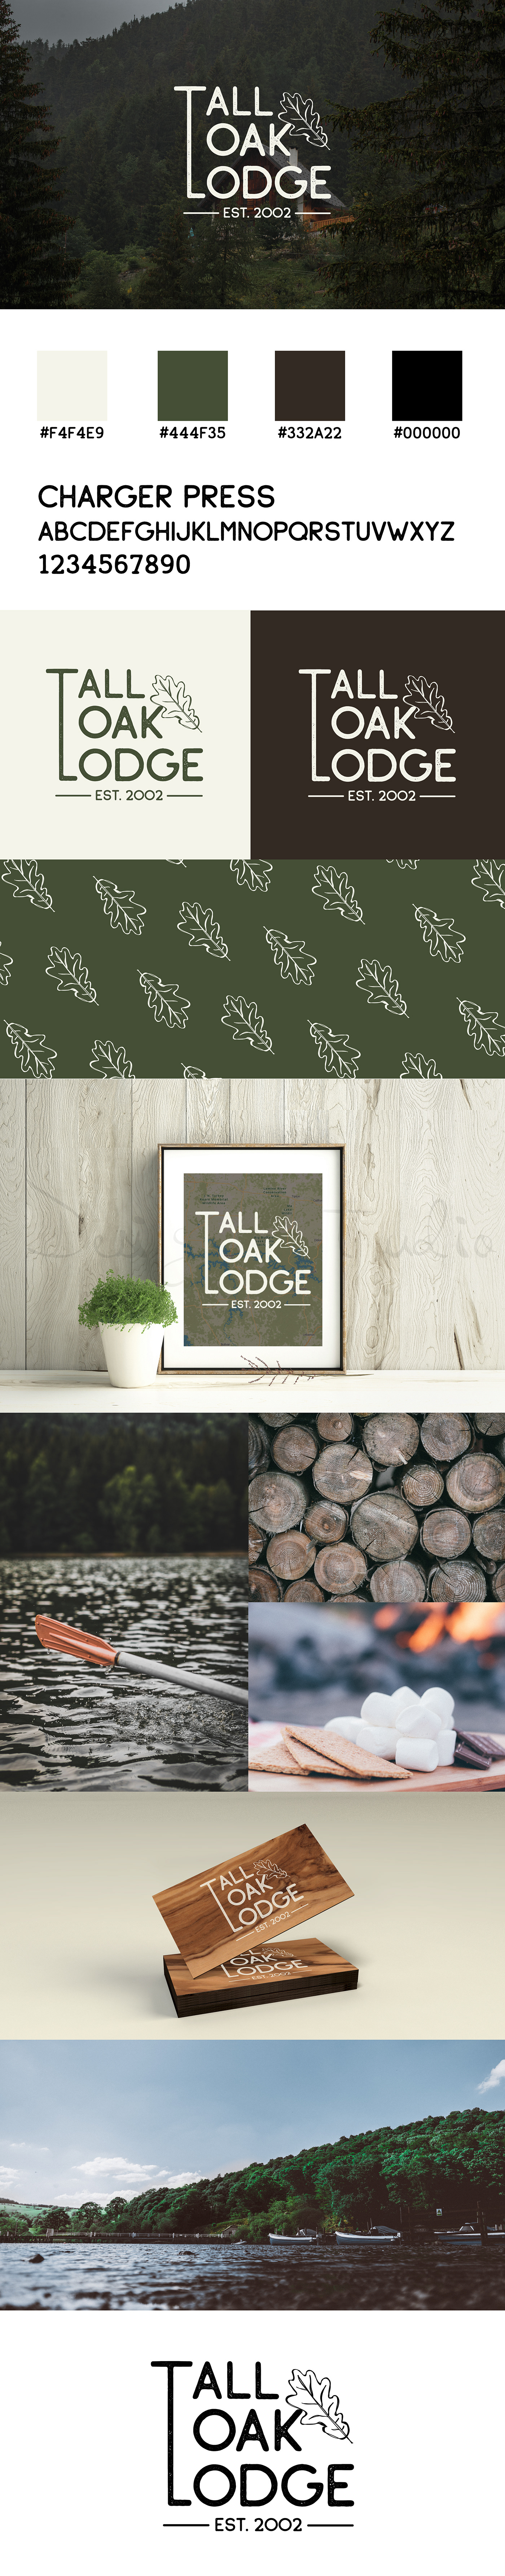 lodge cabin logo lodge logo branding  Lake house lake